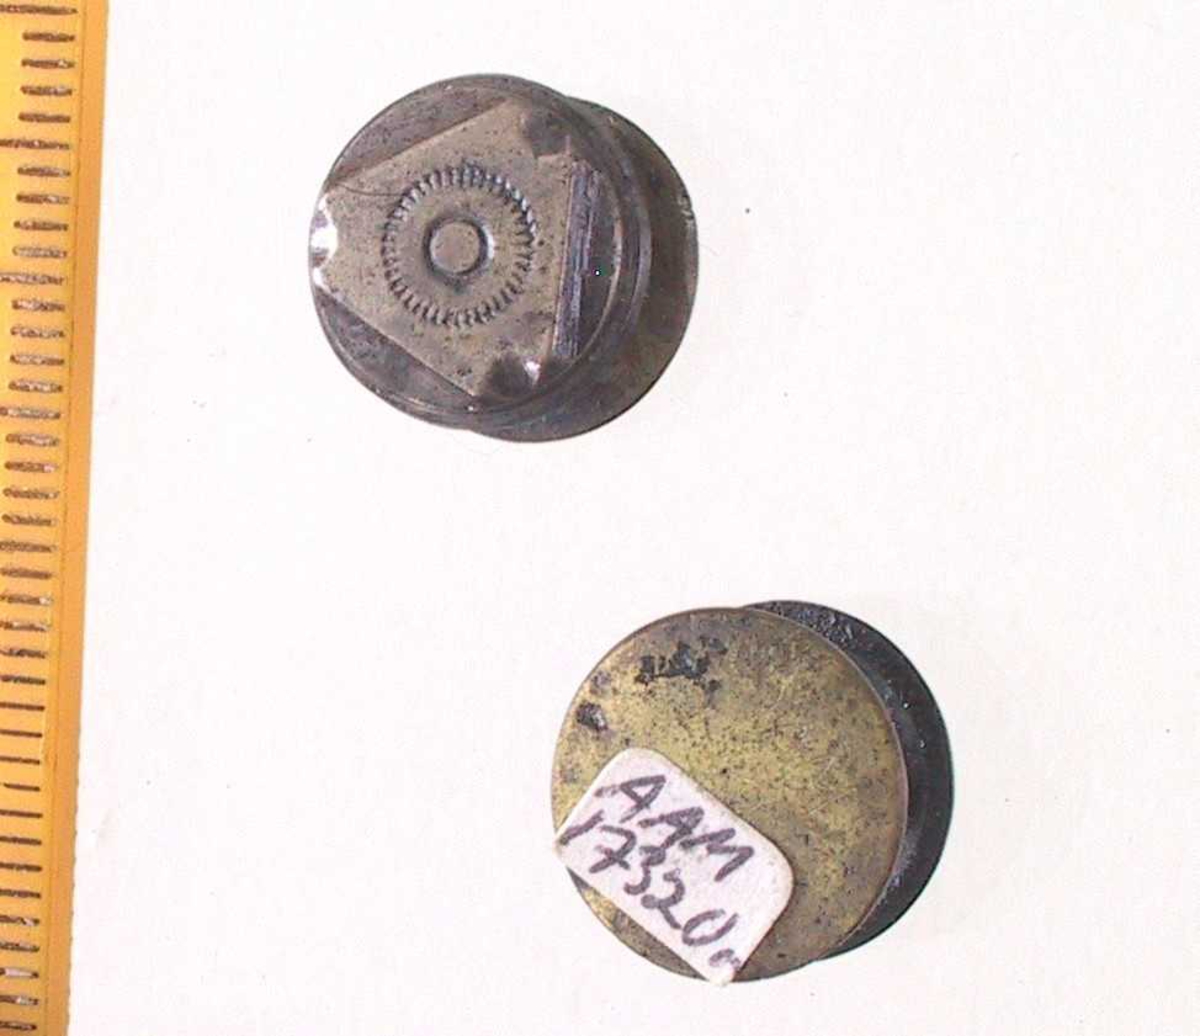 Mansjettknapper,   Sølv  og   messing.  2 doble knapper, bestående av 2  flate skiver med tverrstang.  På den ene x skive en trekantet plate  av sølv dekoevrt med takket sirkel.  Innk.1.juli 1977. 

Lå i skrinet med sytråd,  signeter etc.